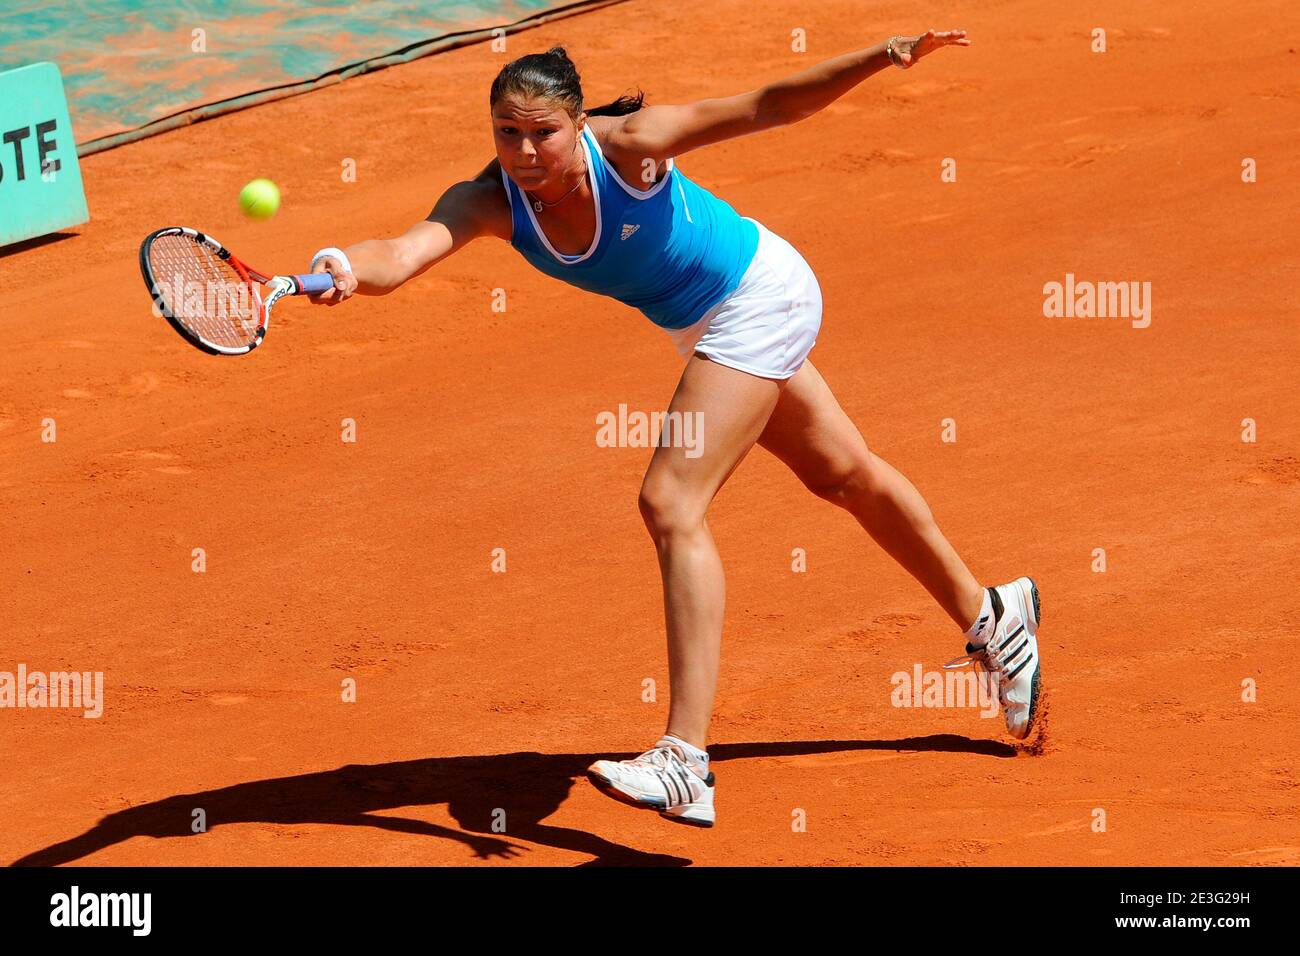 Die russische Dinara Safina besiegt 6-1, 6-0, die französische Aravane Rezai in ihrer vierten Runde der French Open Tennis im Roland Garros Stadion in Paris, Frankreich am 31. Mai 2009. Foto von Henri Szwarc/ABACAPRESS.COM Stockfoto